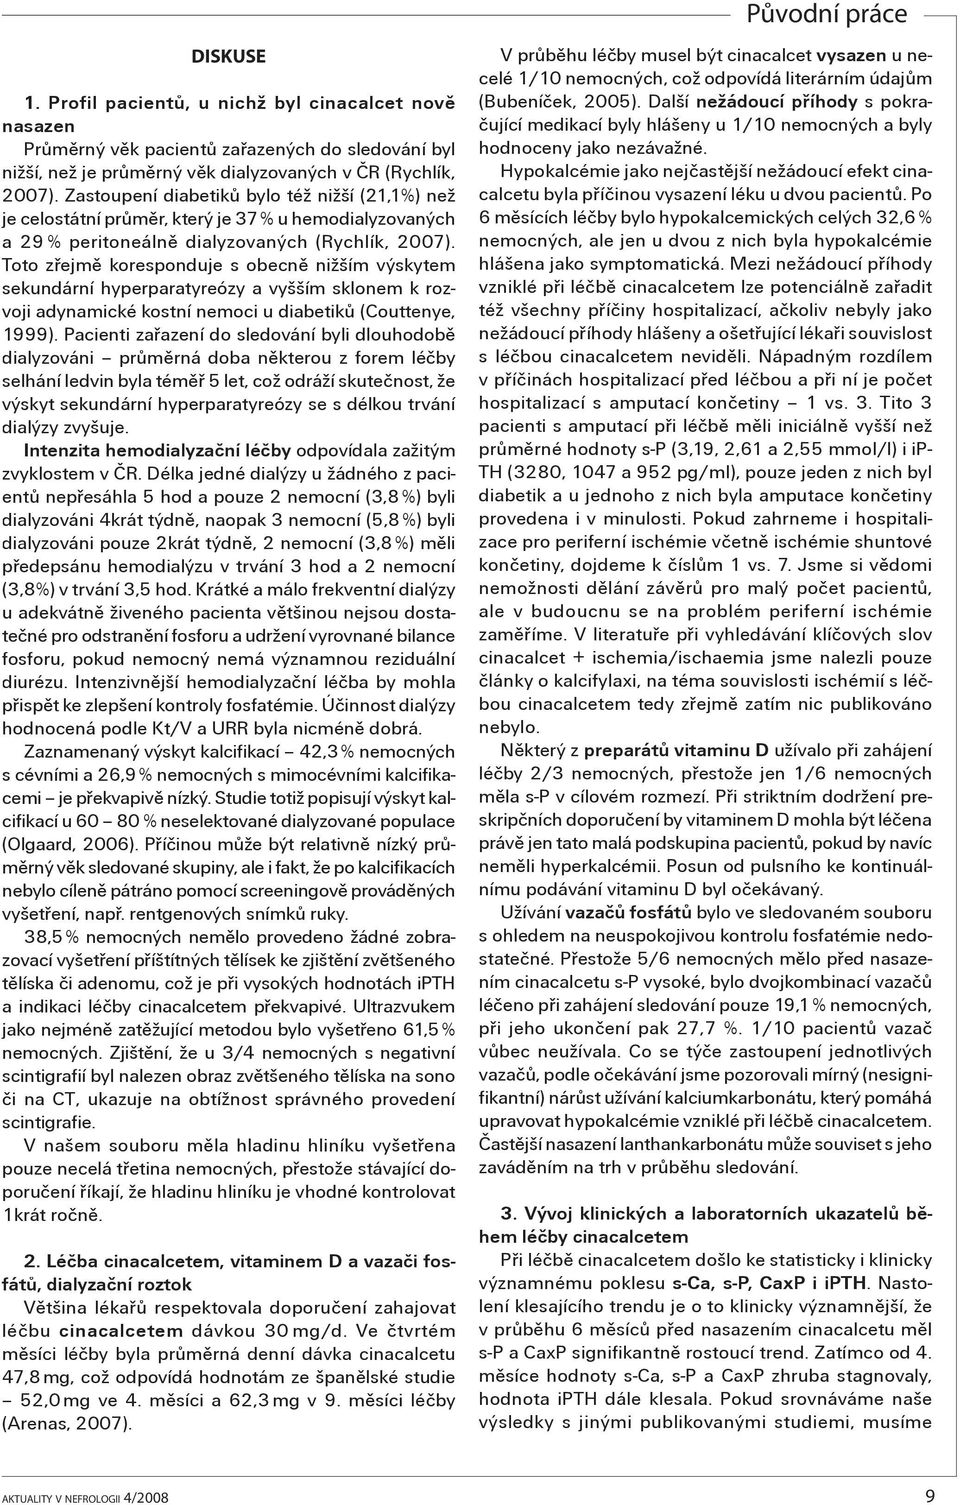 Toto zøejmì koresponduje s obecnì nižším výskytem sekundární hyperparatyreózy a vyšším sklonem k rozvoji adynamické kostní nemoci u diabetikù (Couttenye, 1999).